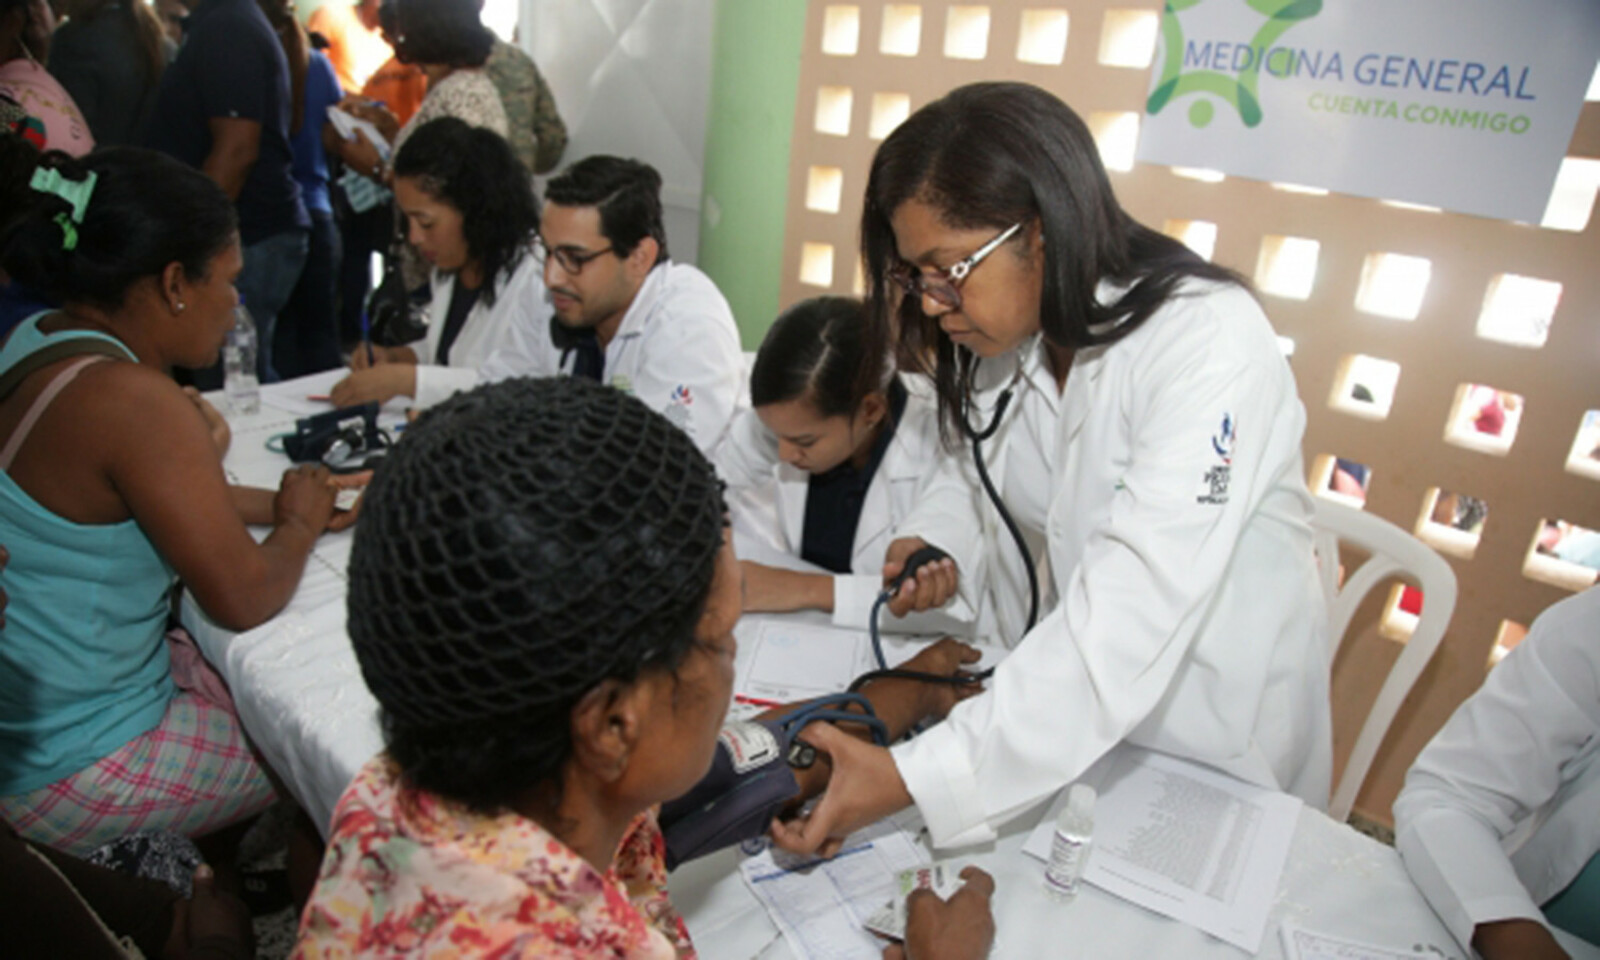 REPÚBLICA DOMINICANA: Programa Cuenta Conmigo, del Despacho de la Primera Dama, beneficia 113,000 personas en jornadas médicas durante el 2019